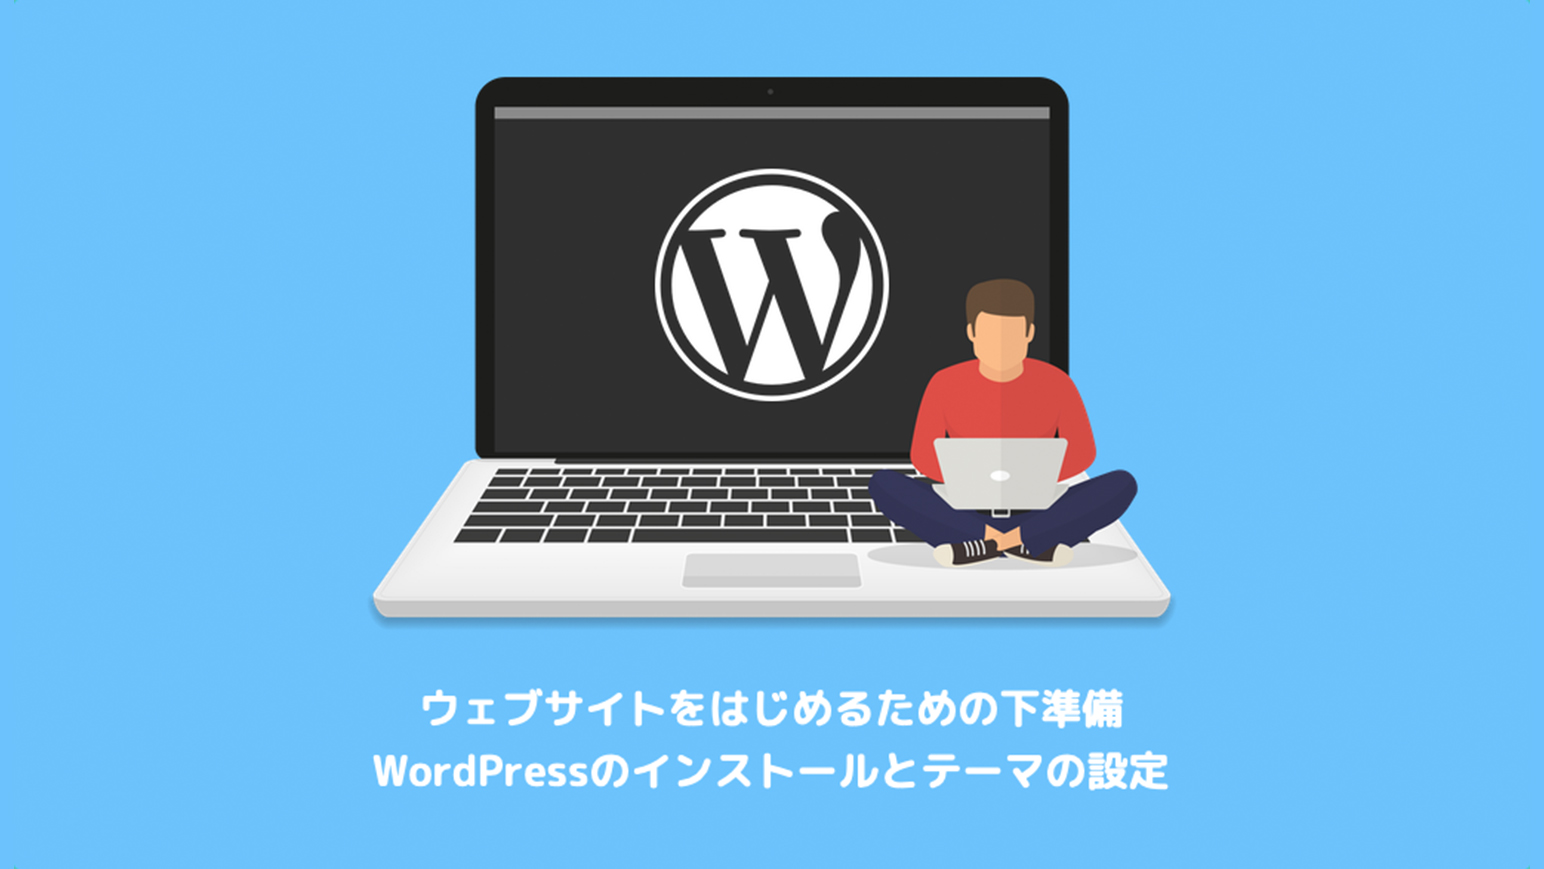 WordPressのインストールとテーマの設定のアイキャッチ